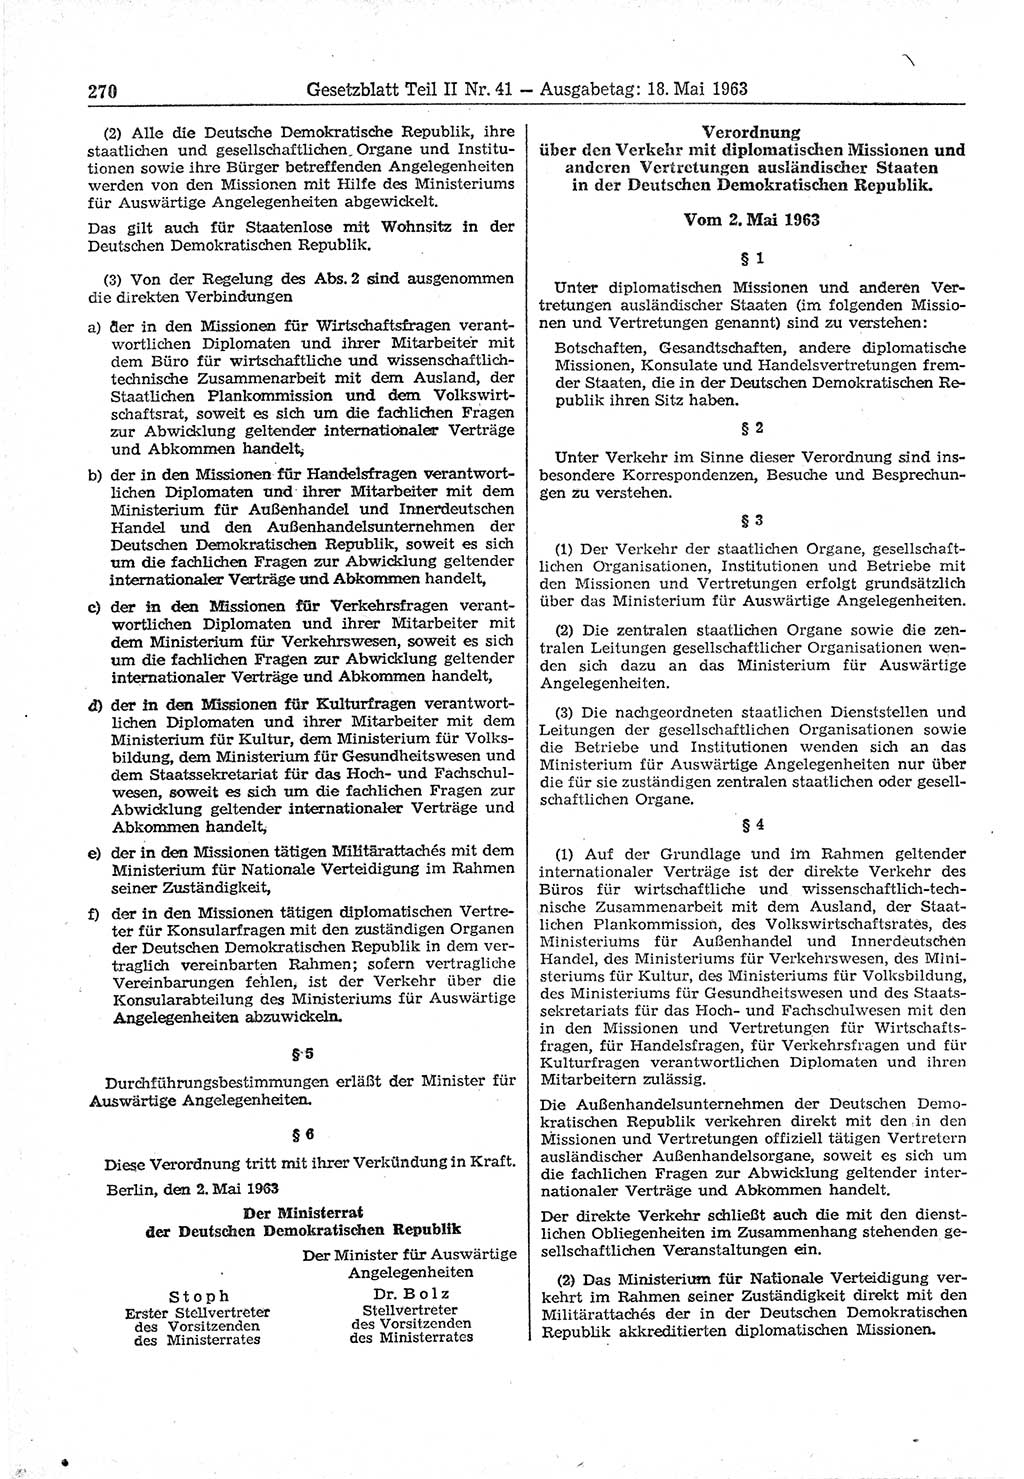 Gesetzblatt (GBl.) der Deutschen Demokratischen Republik (DDR) Teil ⅠⅠ 1963, Seite 270 (GBl. DDR ⅠⅠ 1963, S. 270)